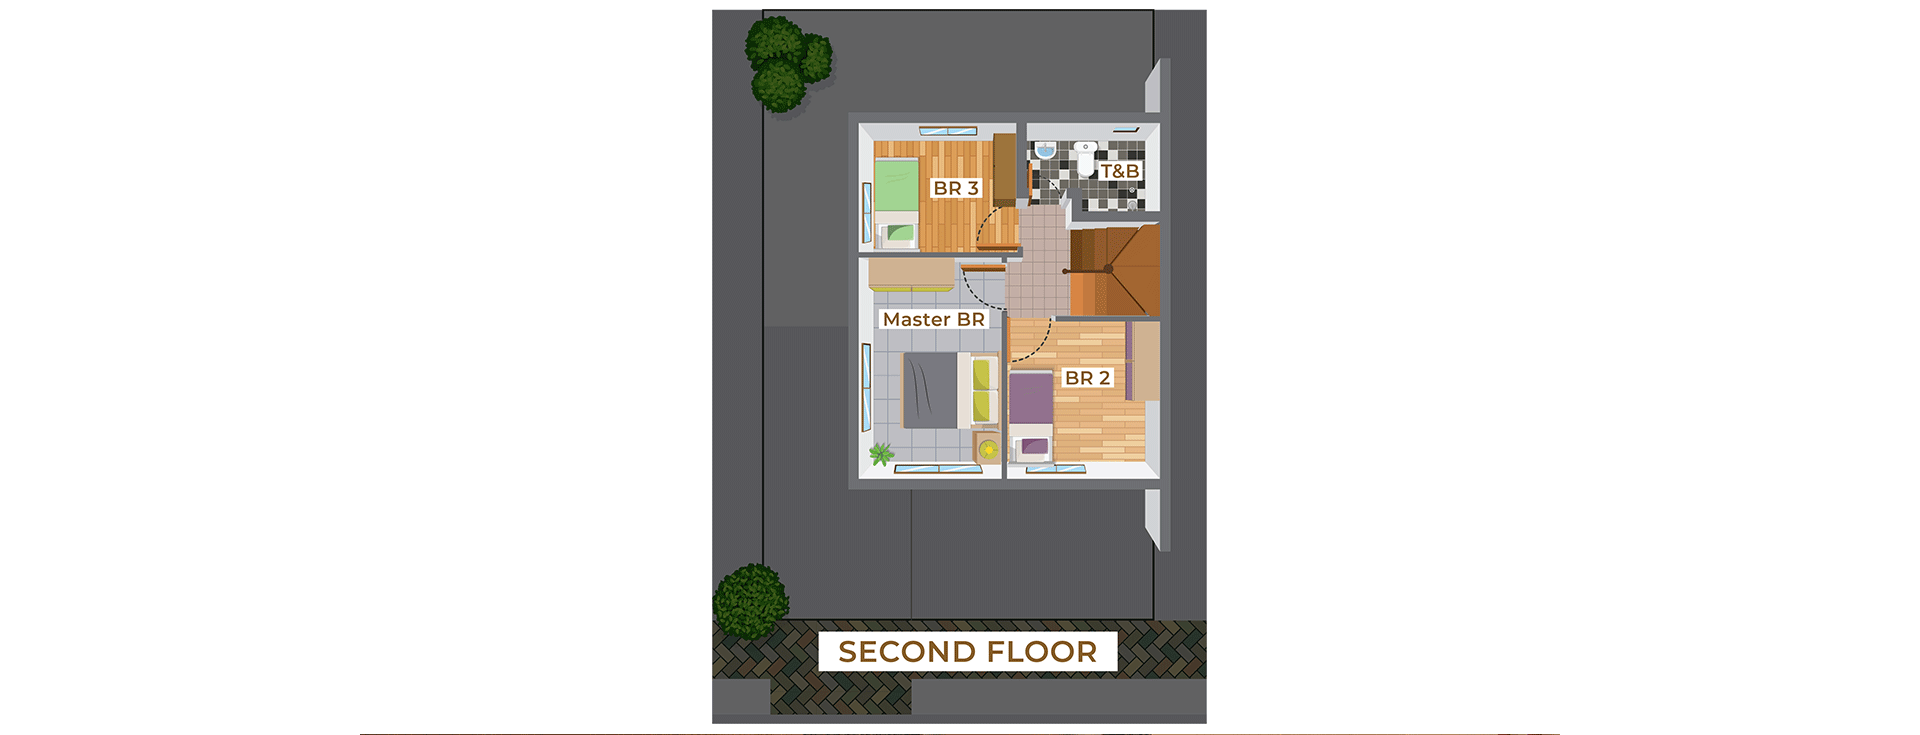 SHPY_Callista Second Floor Plan